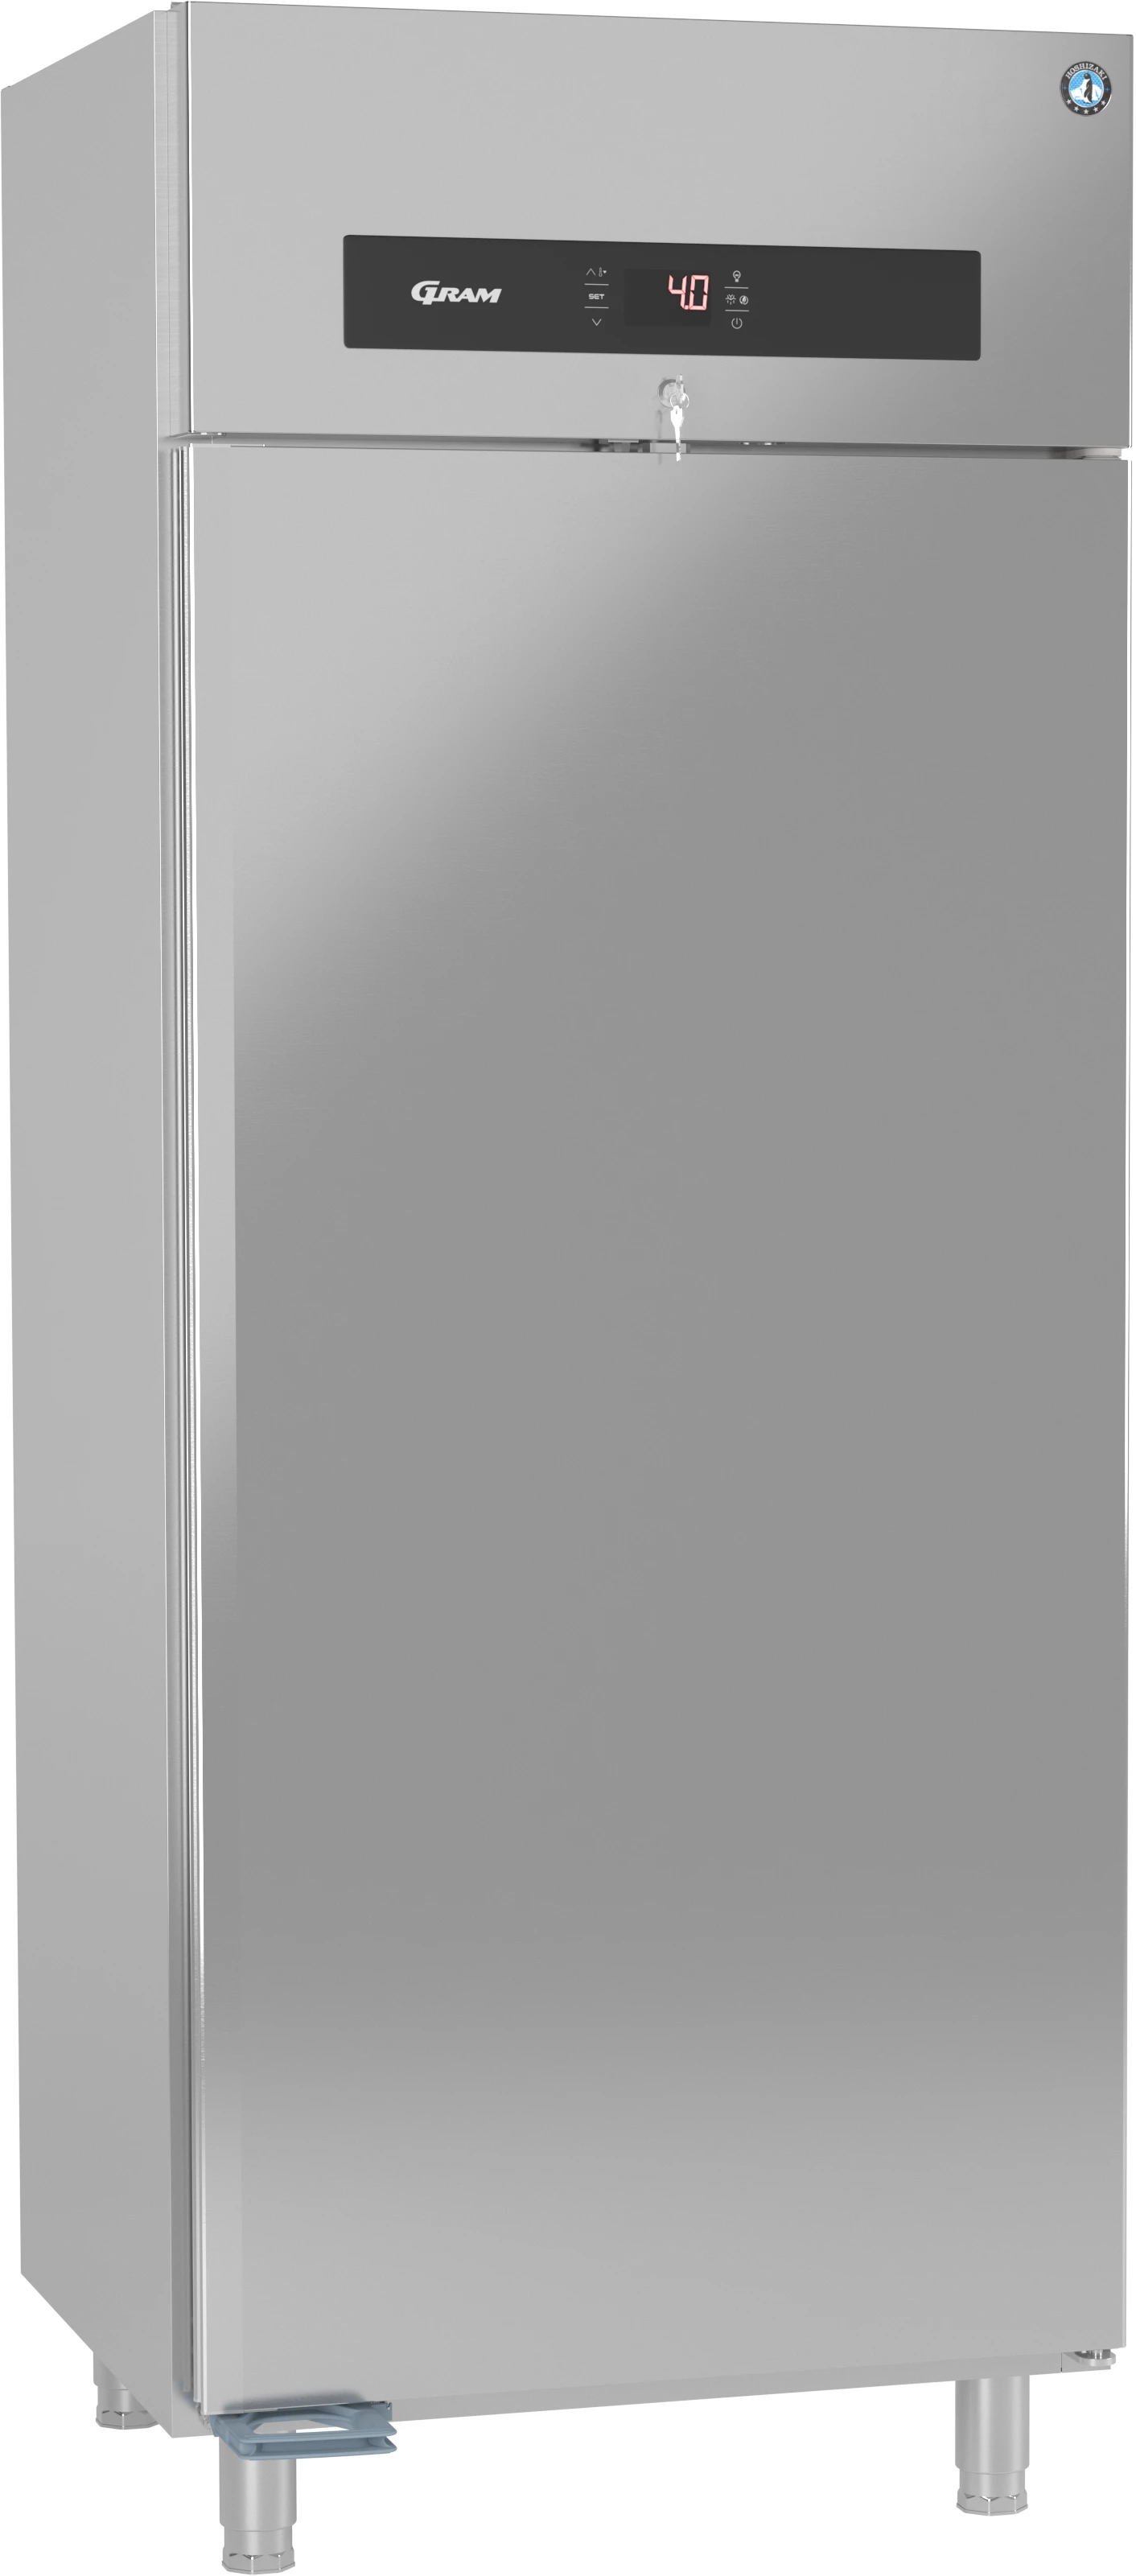 Gram Premier KW80 L DR køleskab